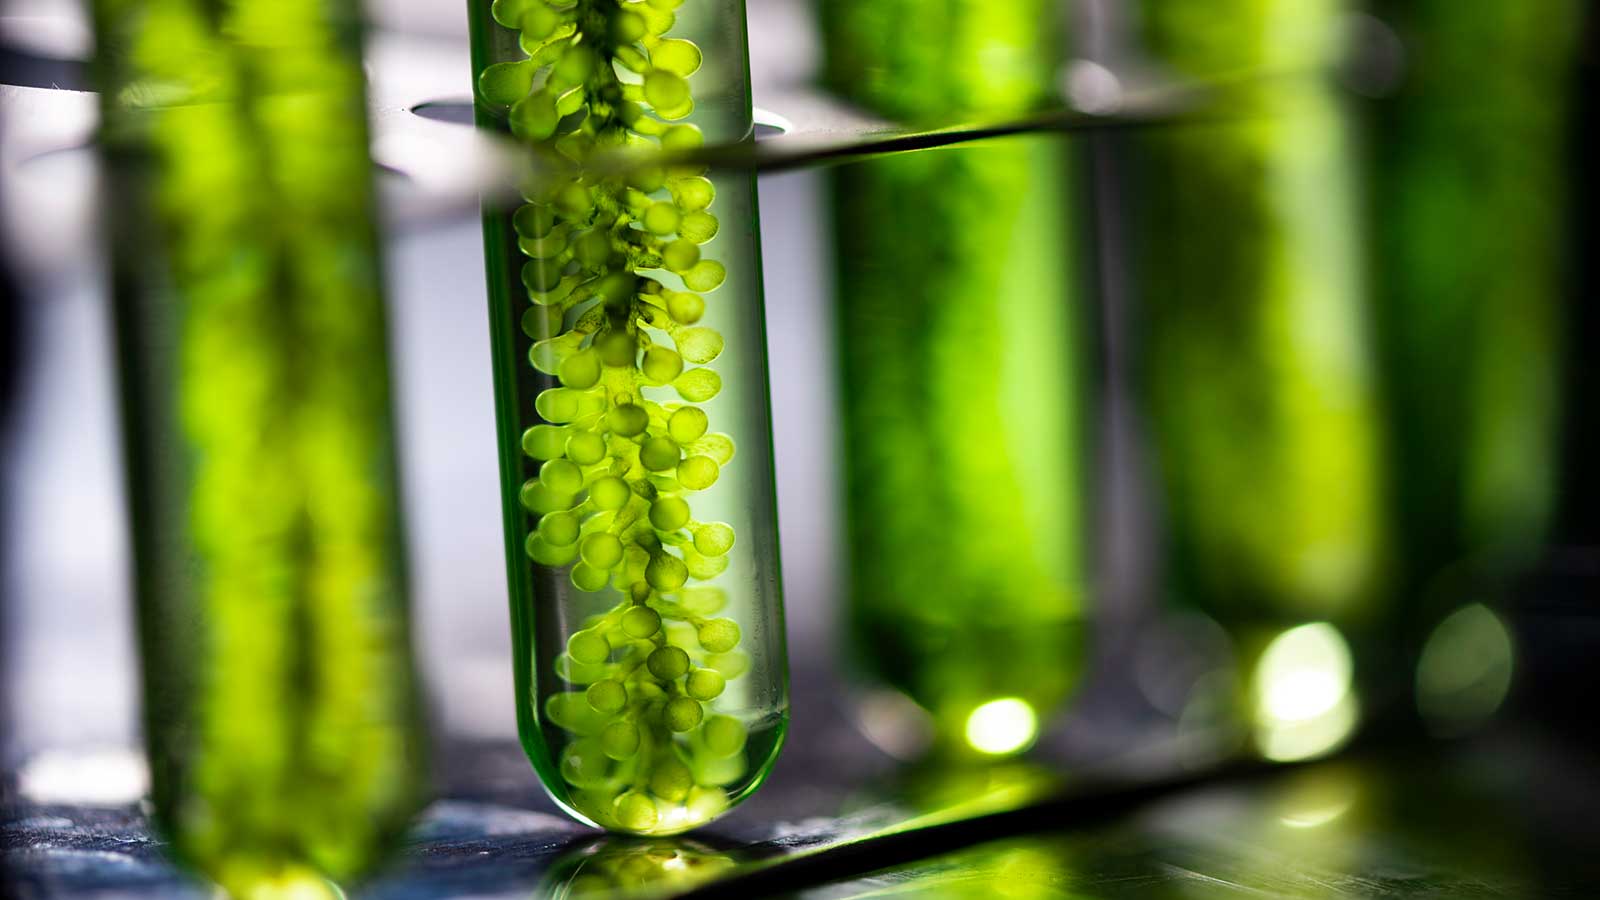 Algae fuel, Algae research in industrial laboratories